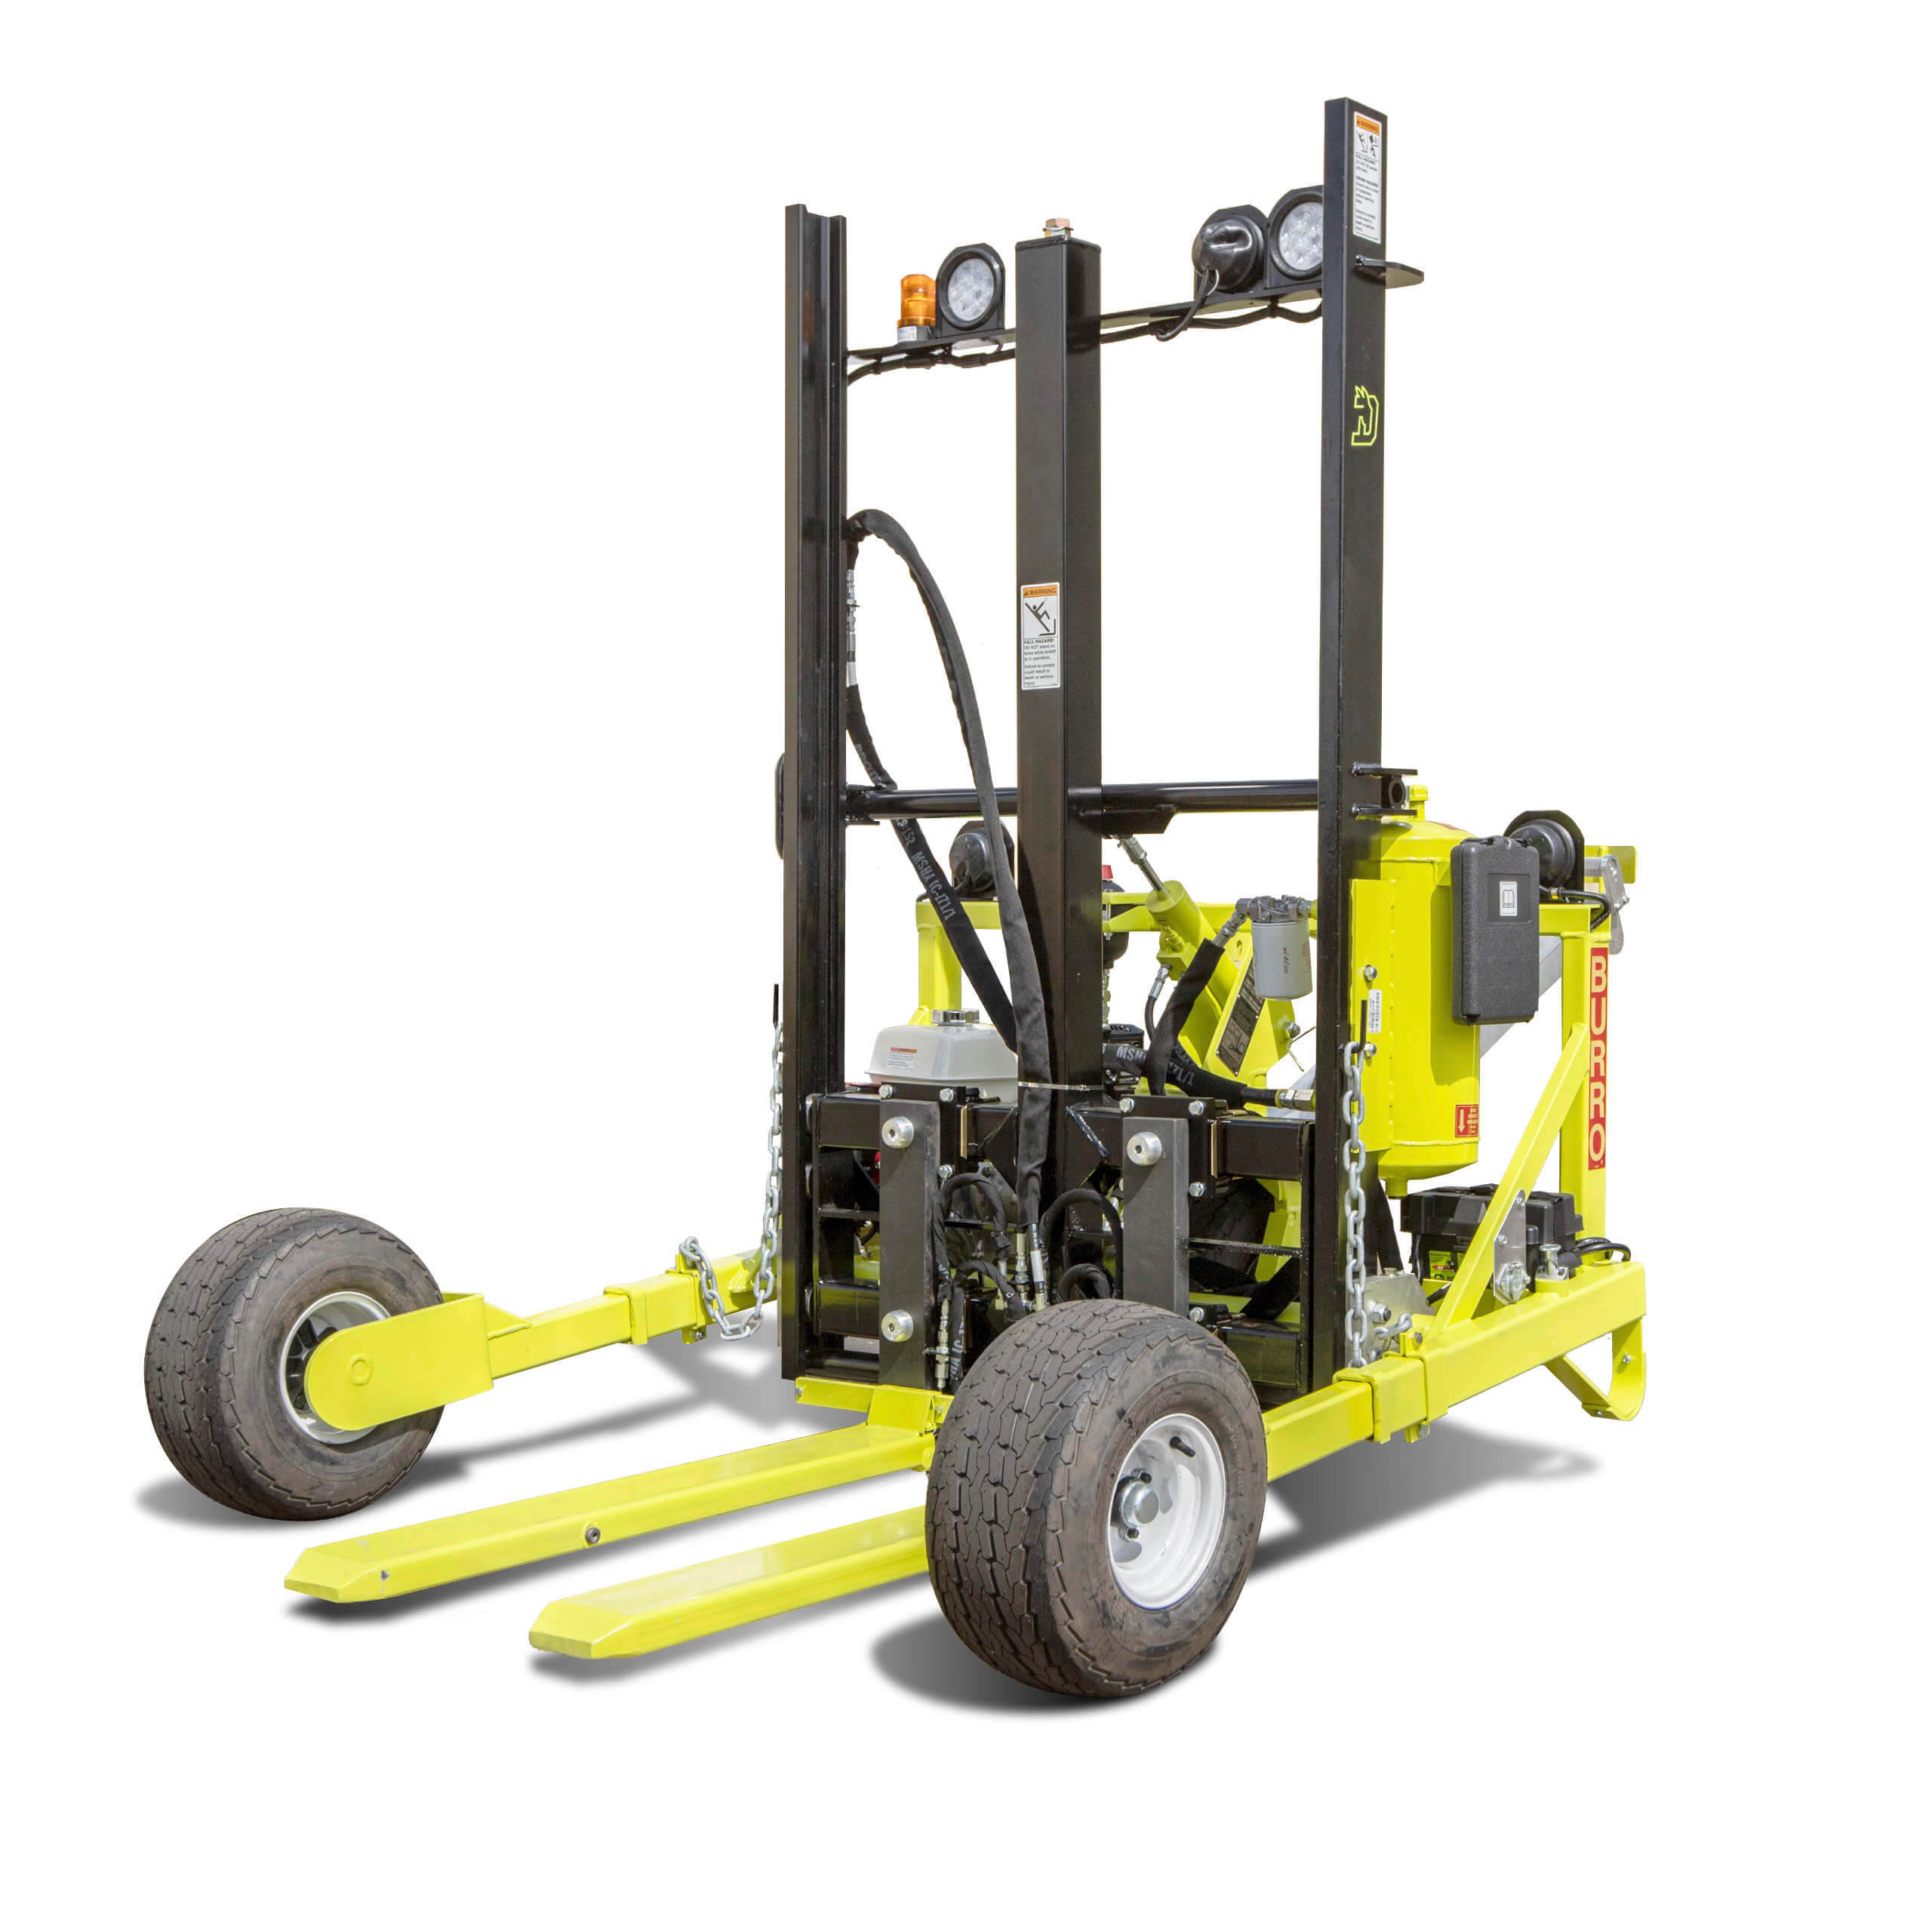 Burro Forklift For Smaller Jobs On Improved Terrain Donkey Forklift